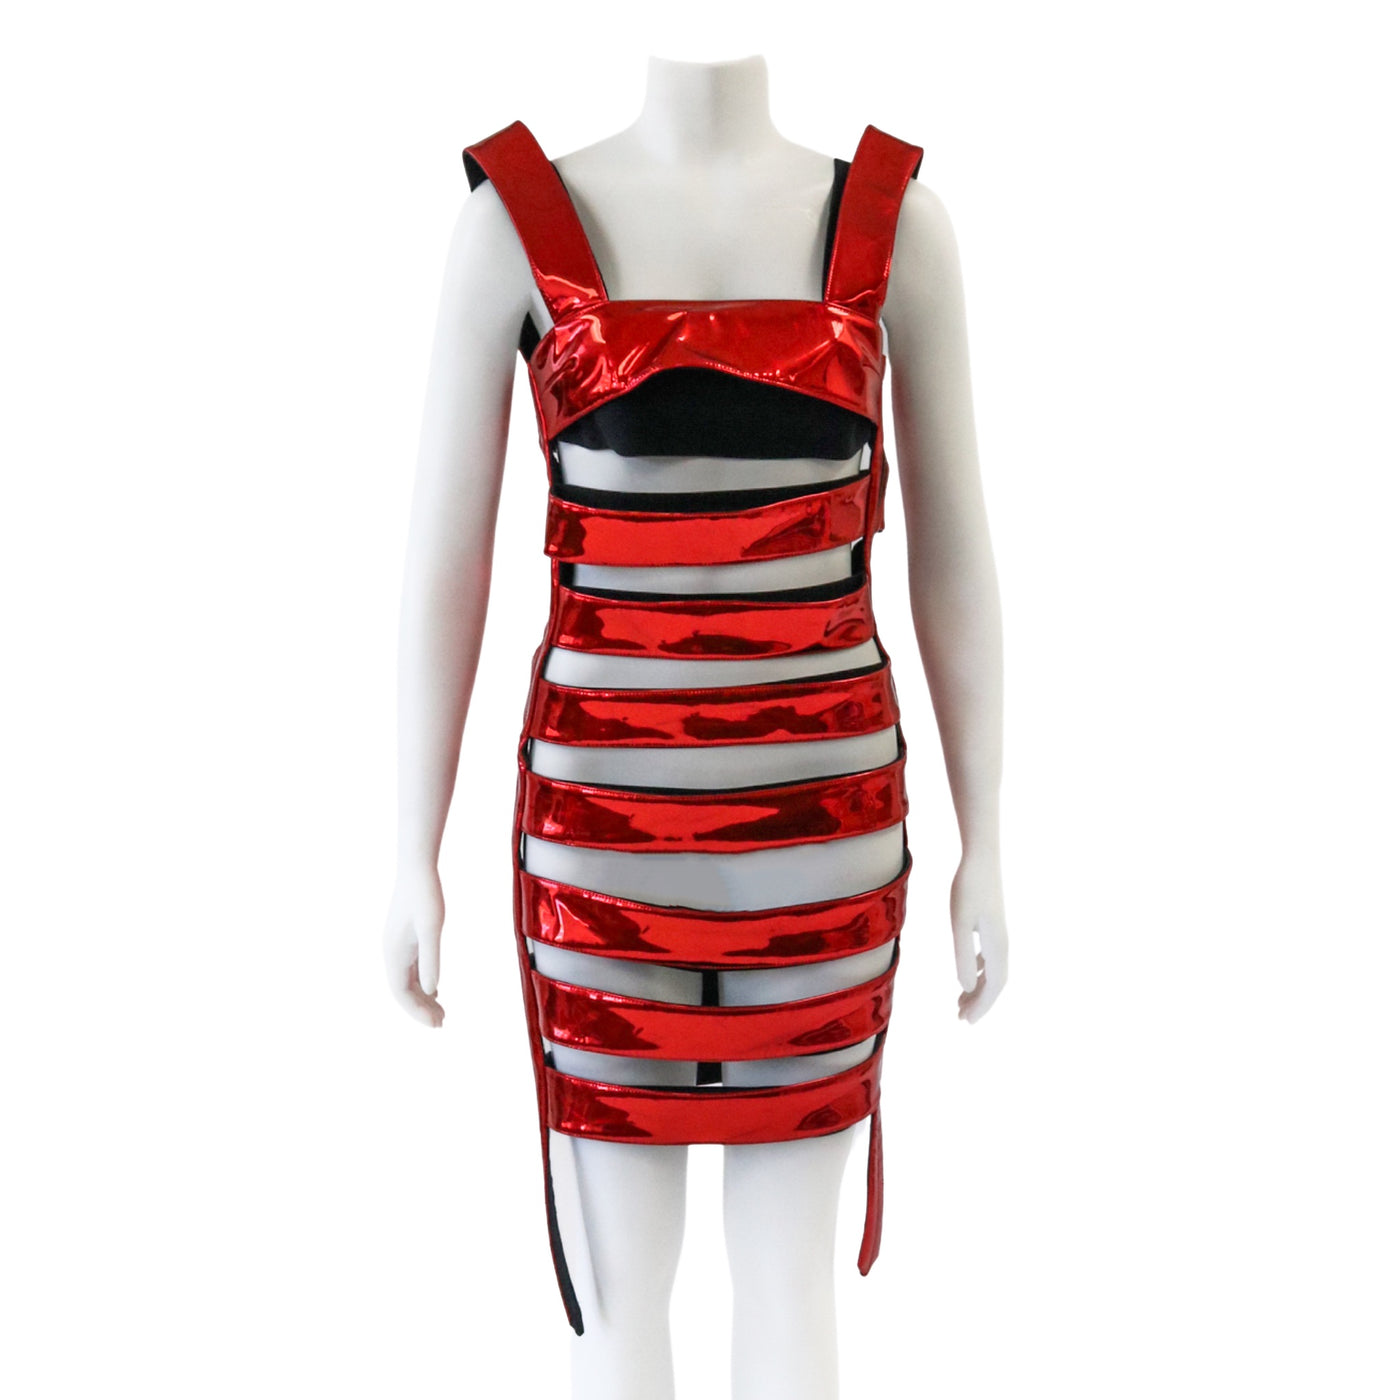 Sunburn Red & Black Cut-Out Dress